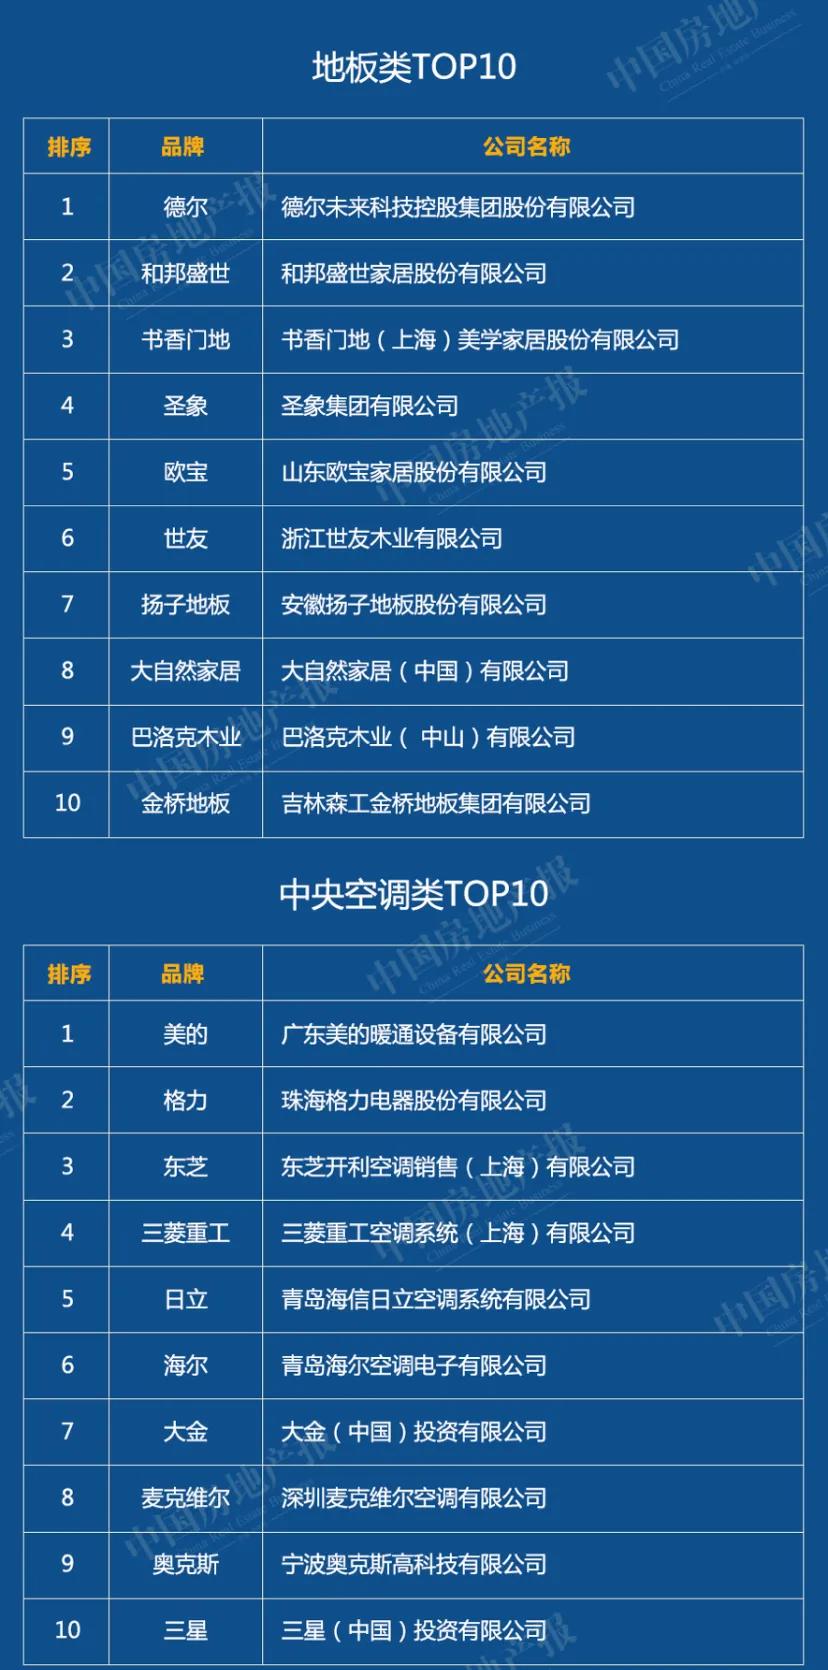 2020中国绿色建筑TOP排行榜系列榜单解读